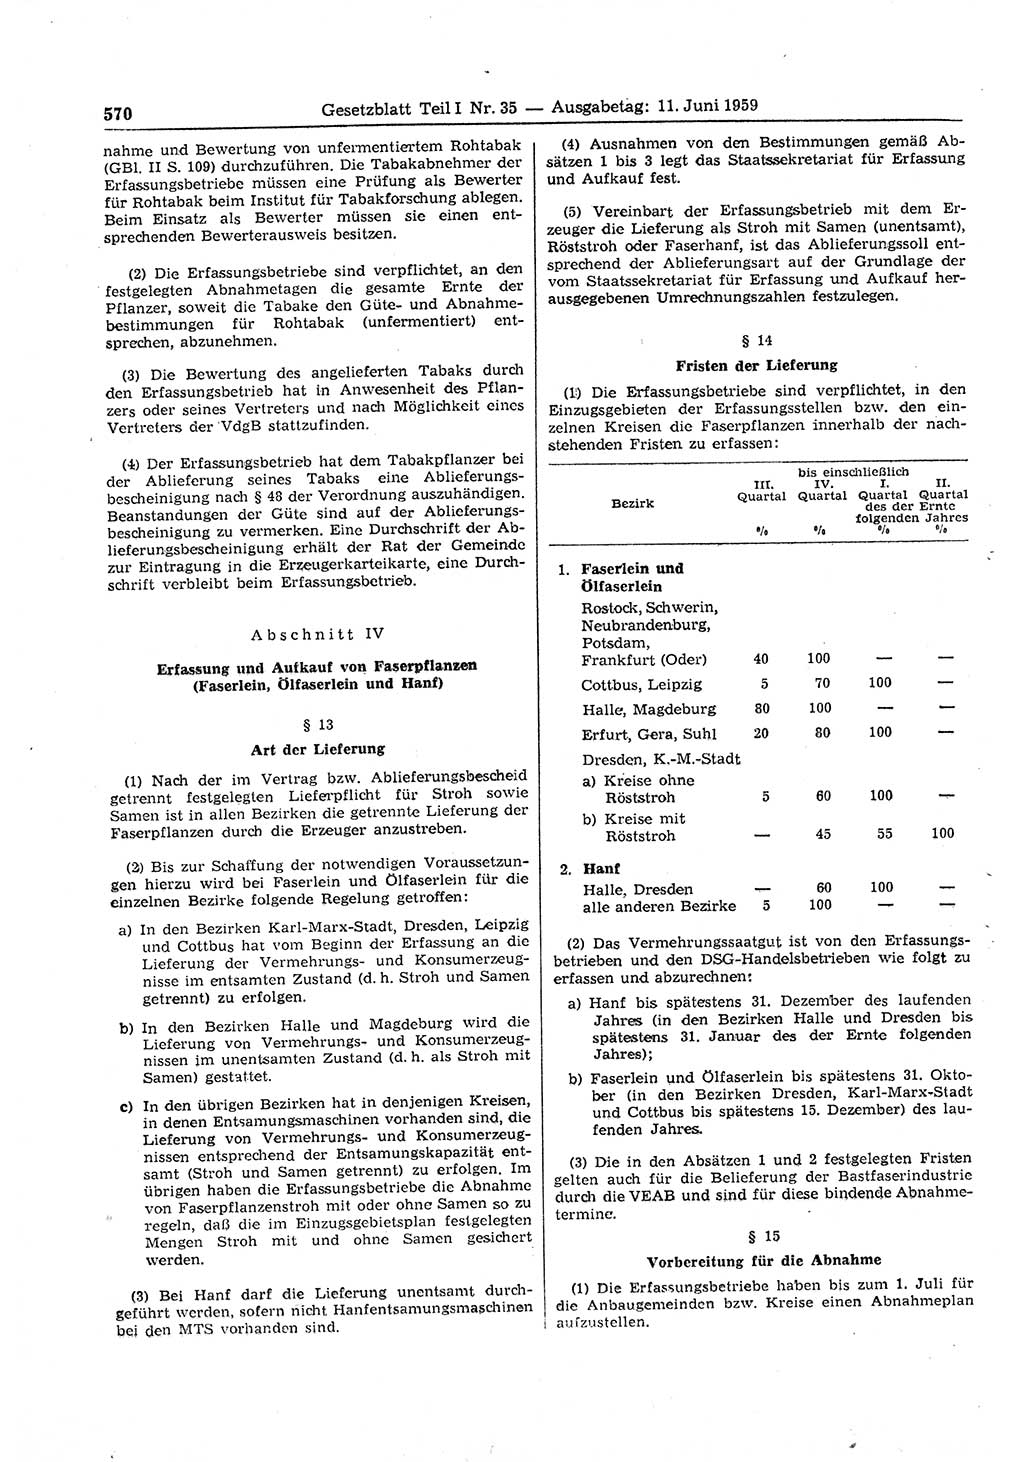 Gesetzblatt (GBl.) der Deutschen Demokratischen Republik (DDR) Teil Ⅰ 1959, Seite 570 (GBl. DDR Ⅰ 1959, S. 570)